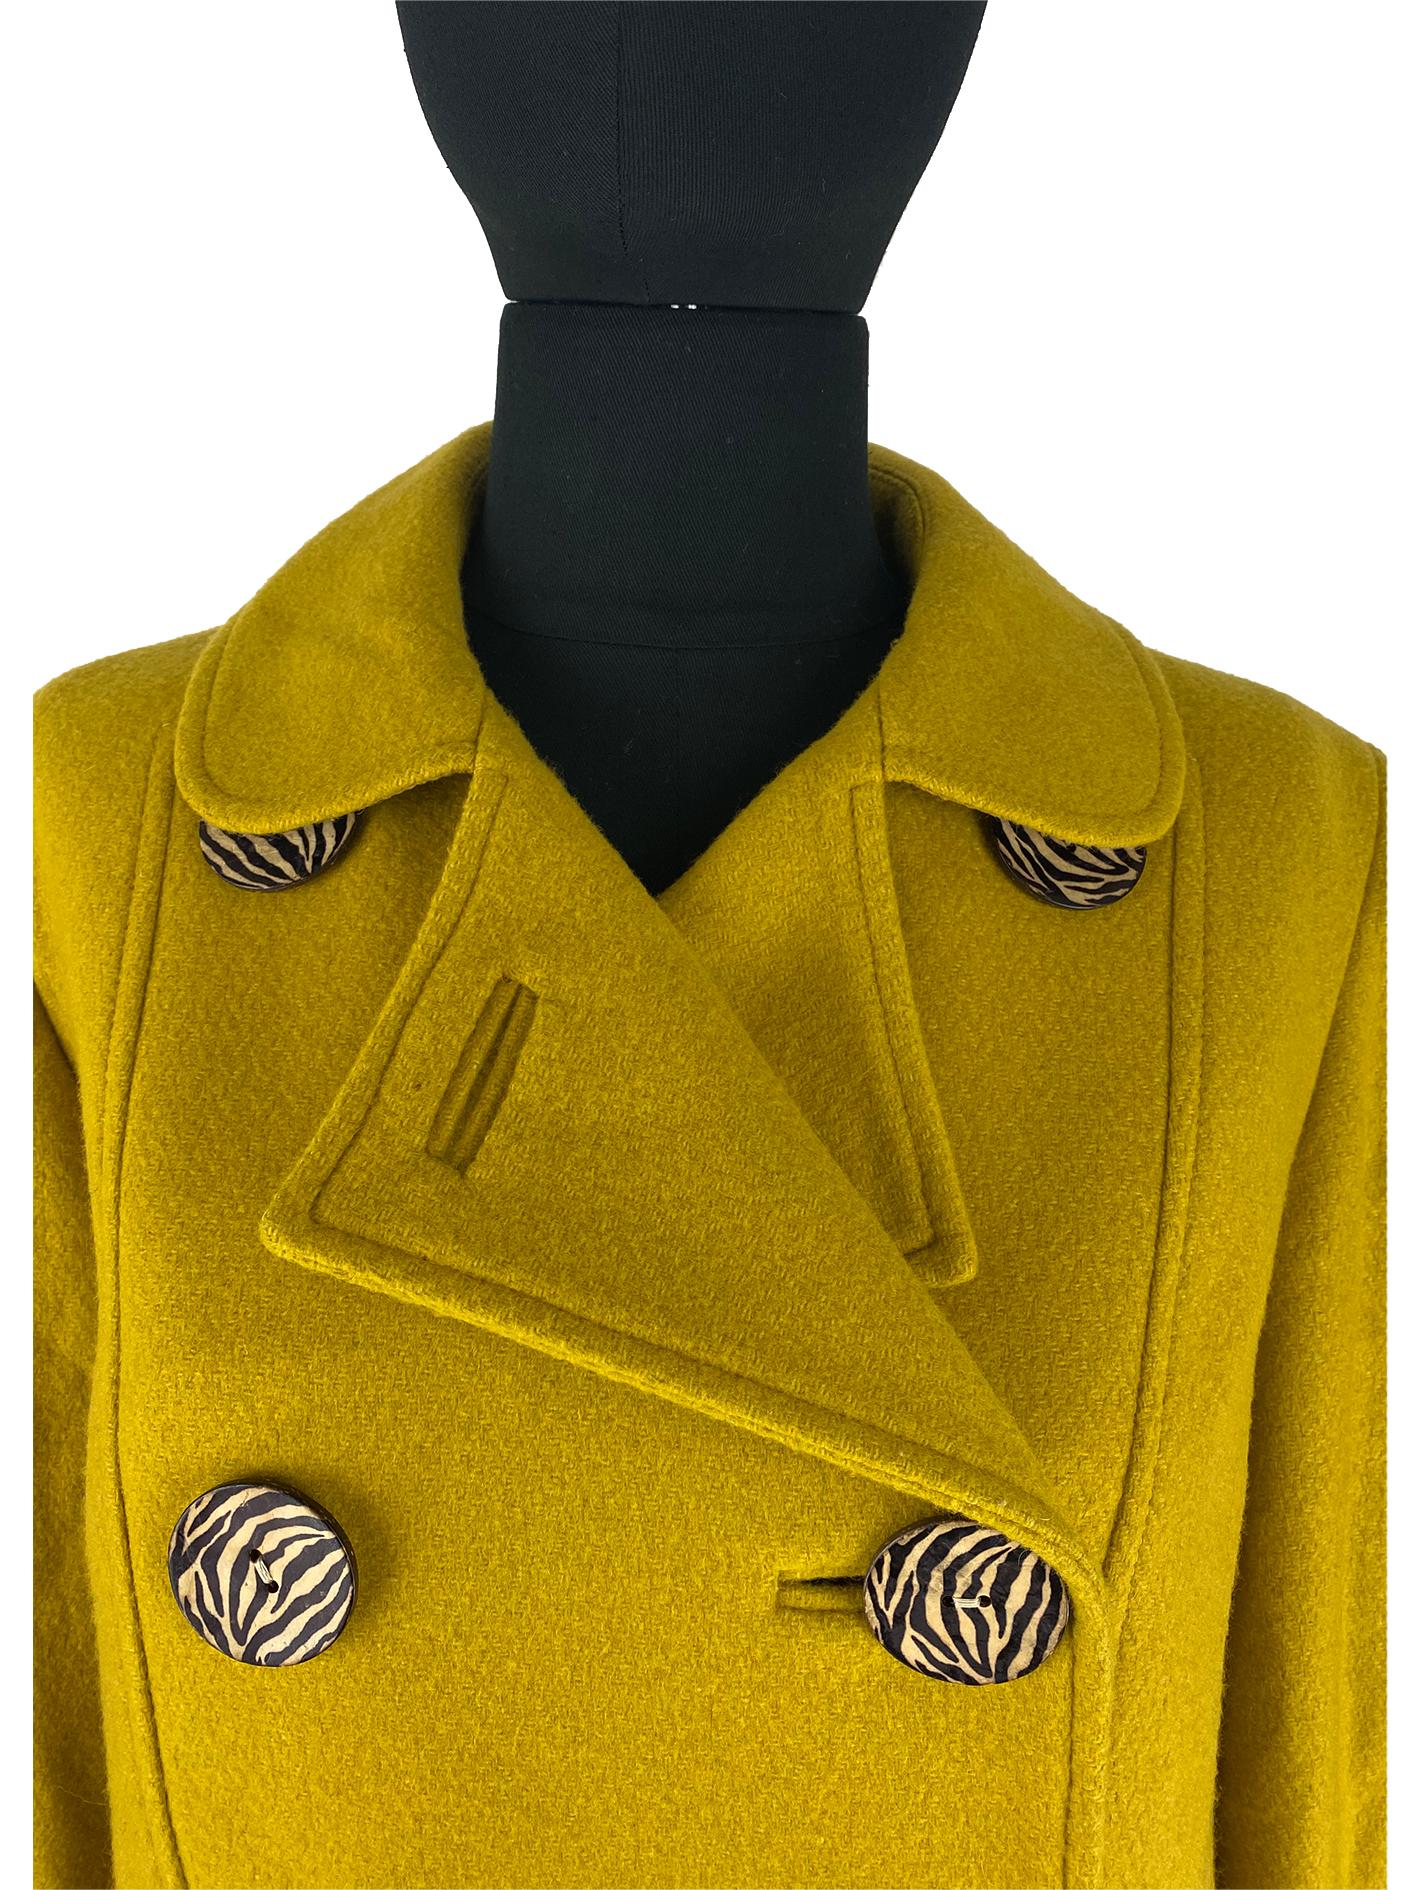 wool yellow jacket